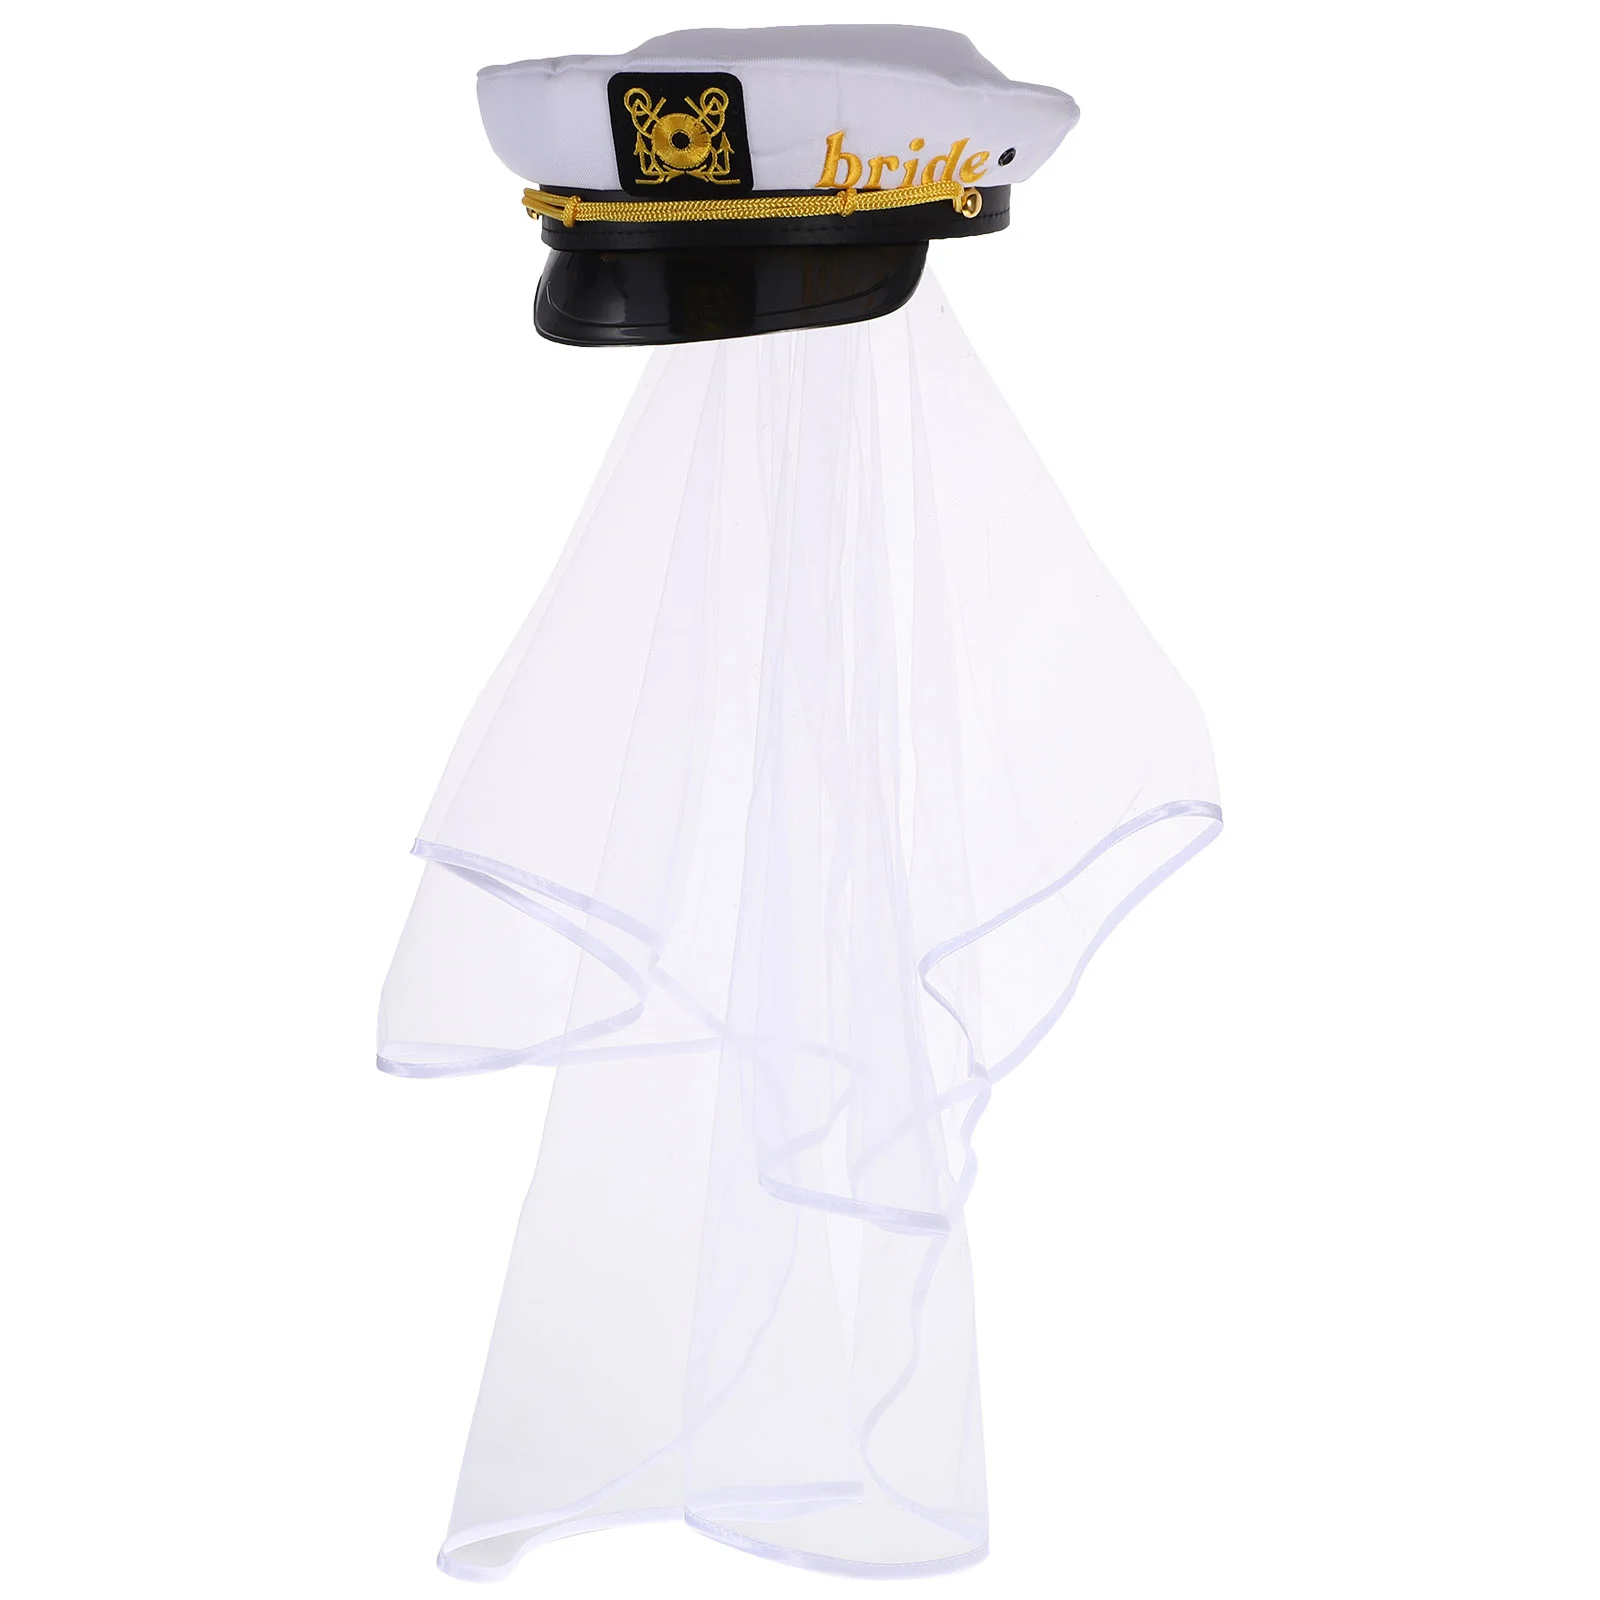 

Hat Bride Captain Veil Wedding Bachelorette Navy Party Sailor Nautical Cap White Hats Accessory A Hair Bridal Favors Hen Boat